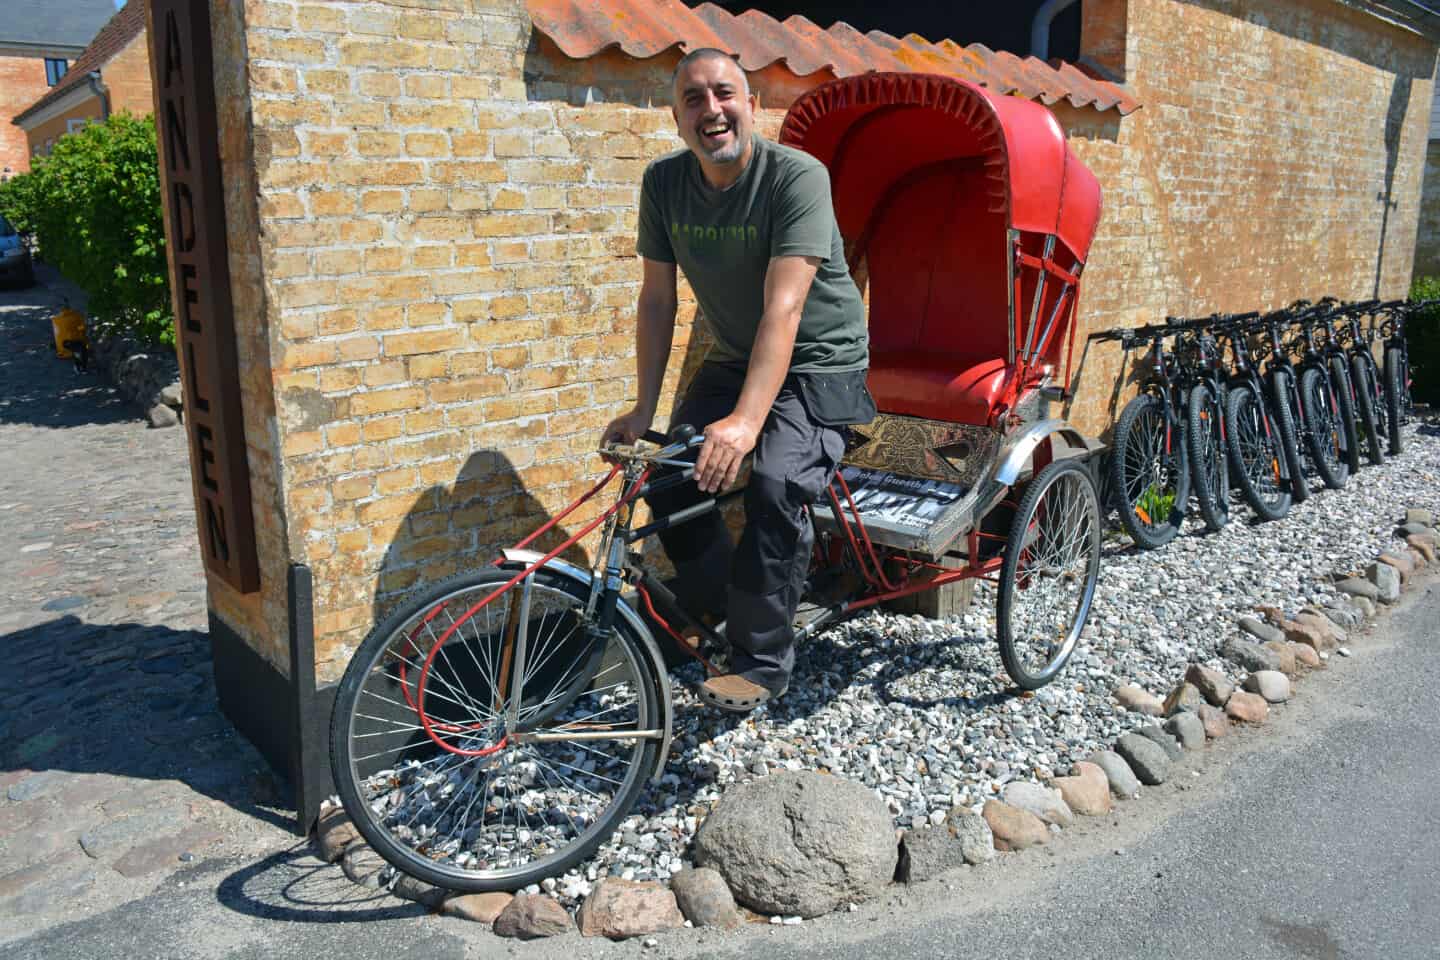 Lure Total muggen Derfor er Adams cykeludlejning et hit: Hvis du punkterer, får du en  byttecykel, og du kan også leje en rickshaw | faa.dk